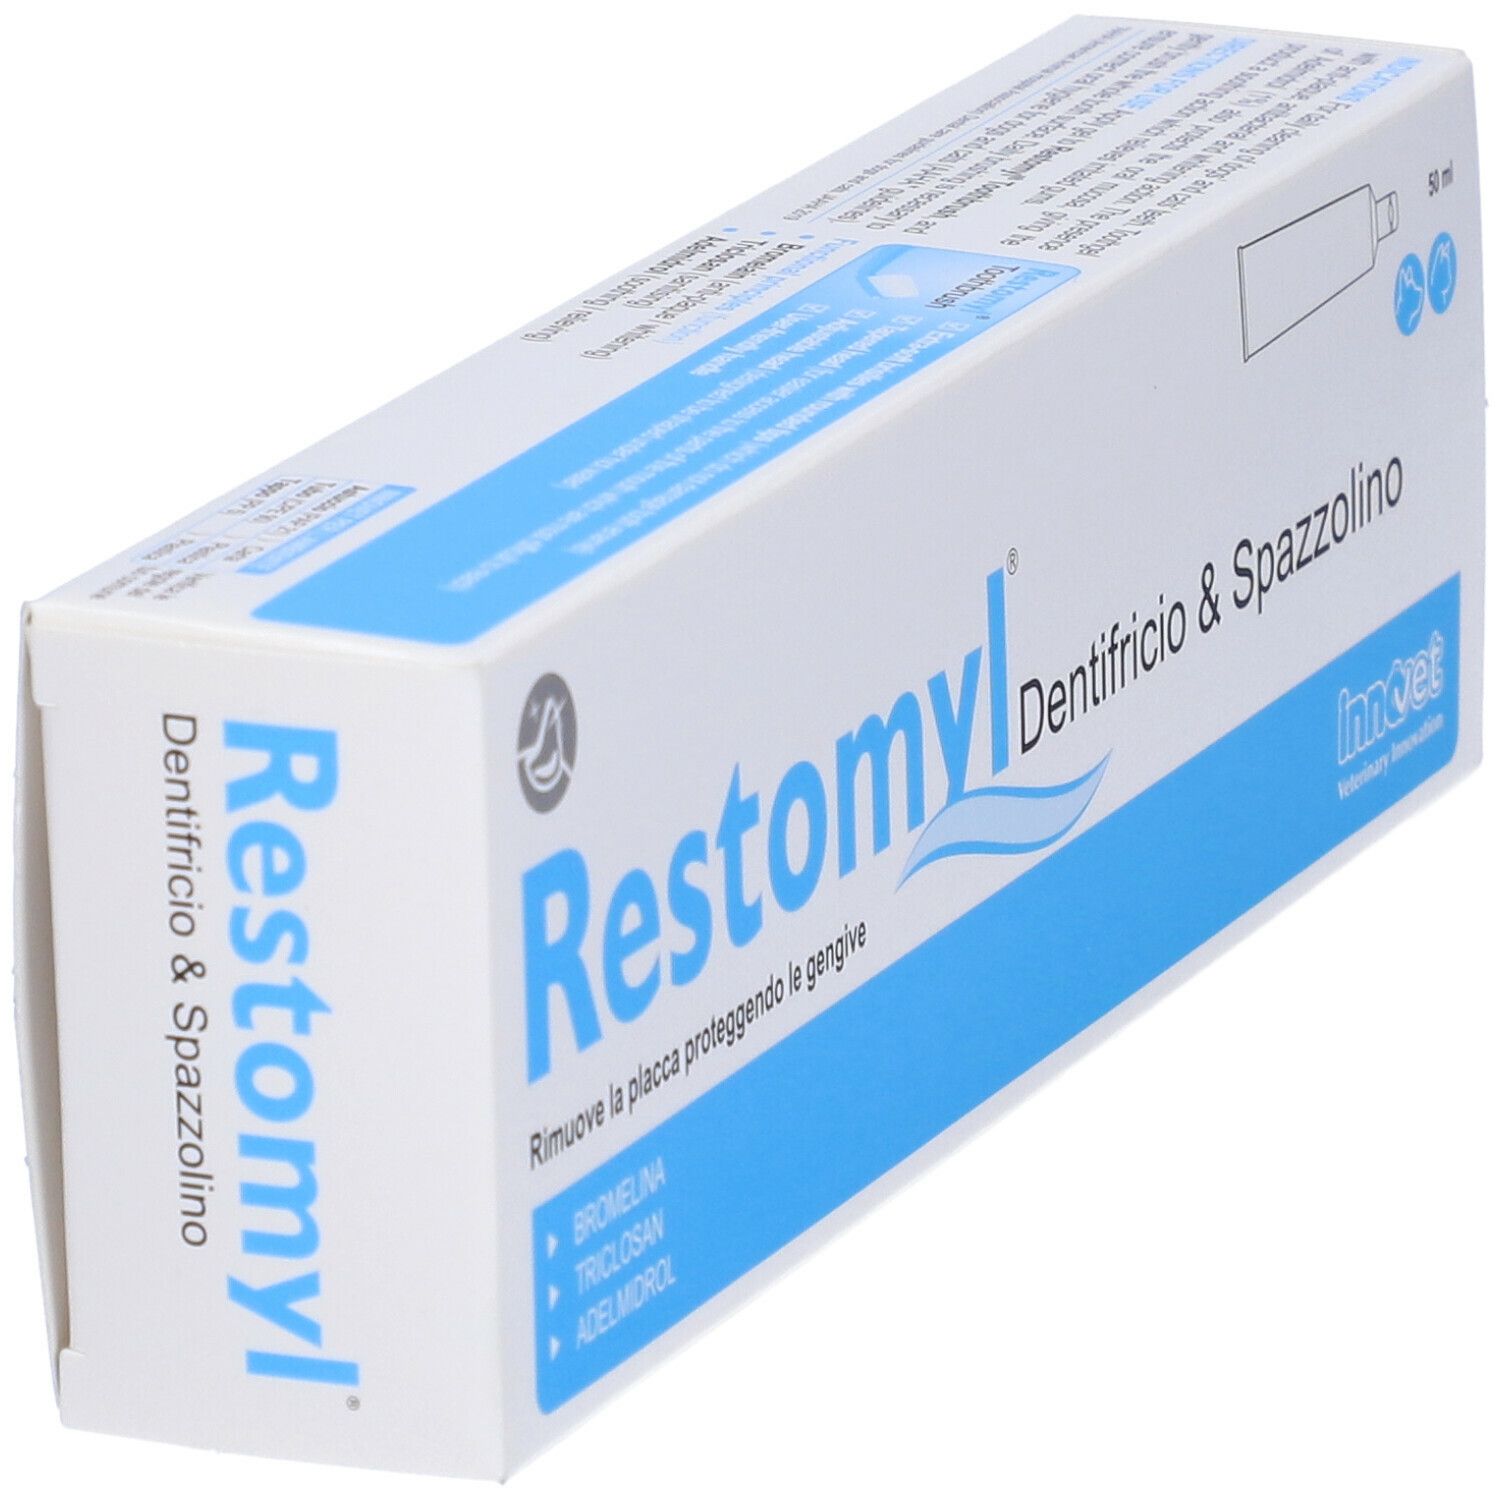 Restomyl Dent&Spazz Extrasoft